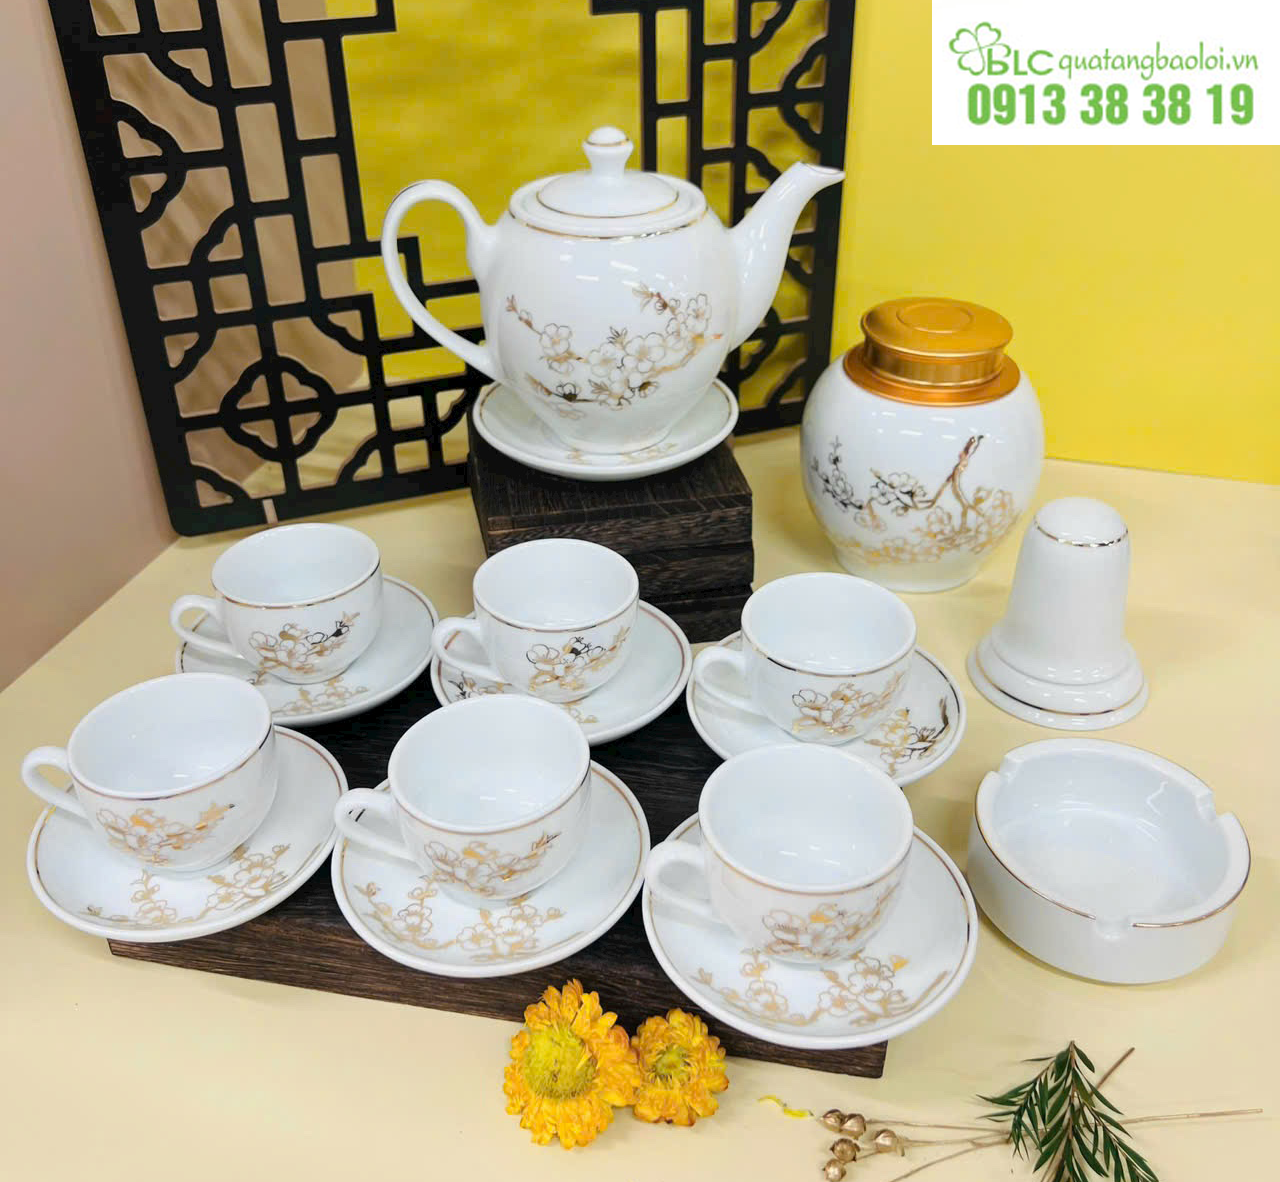 Quà Tặng Bảo Lợi chuyên sản xuất ấm chén trà in logo bền đẹp từ những nguyên liệu từ làng gốm Bát Tràng